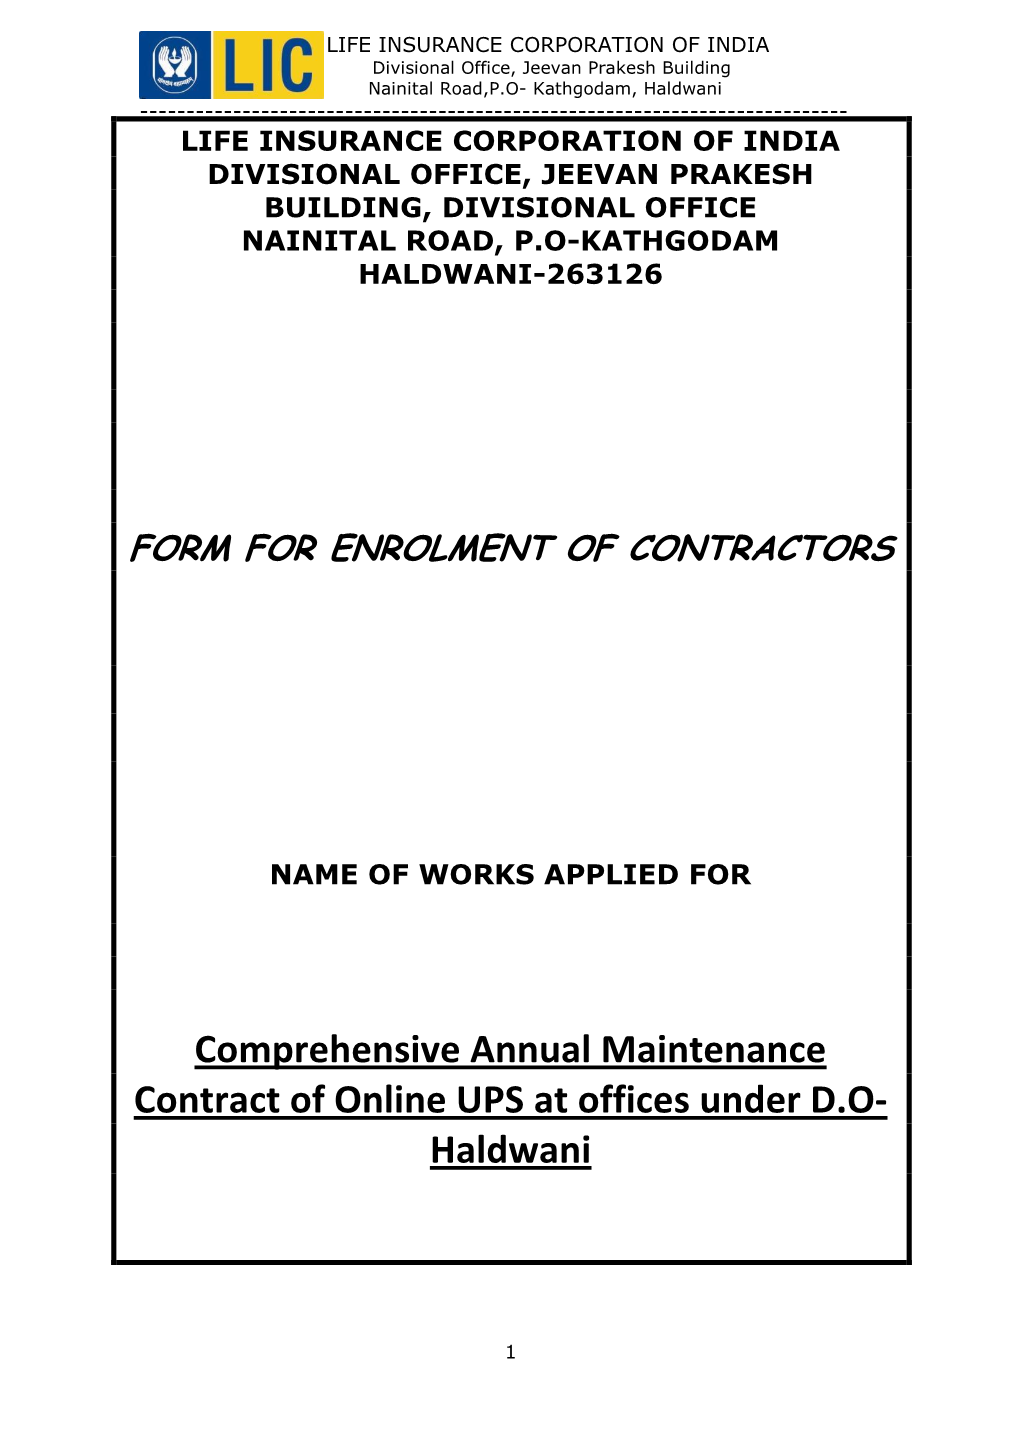 NIT Enrolment Form for AMC Of